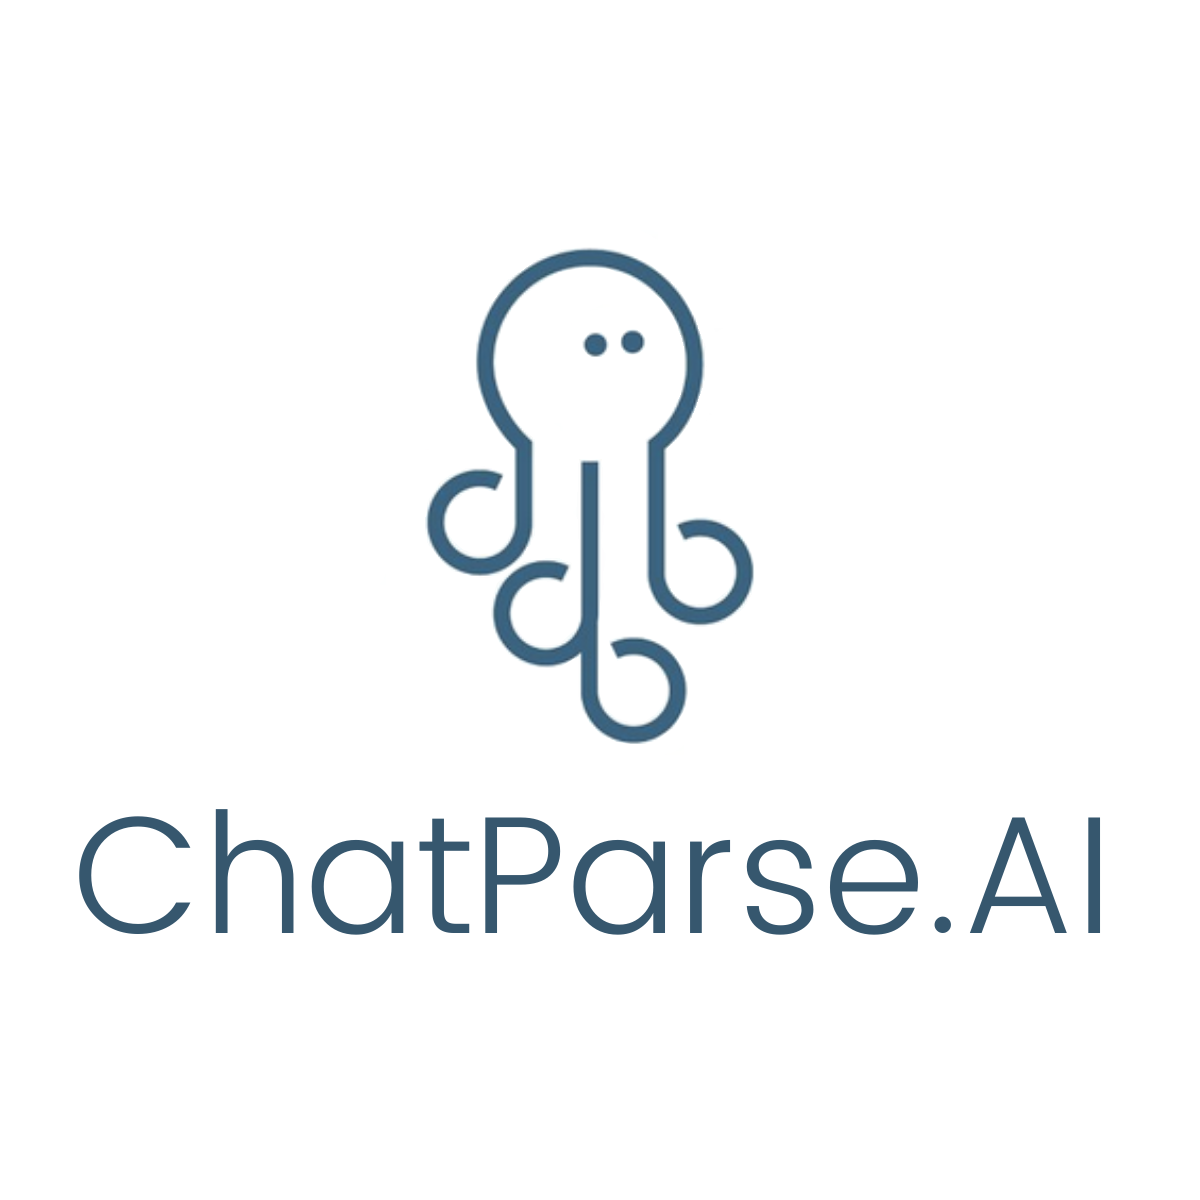 ChatParse.AI